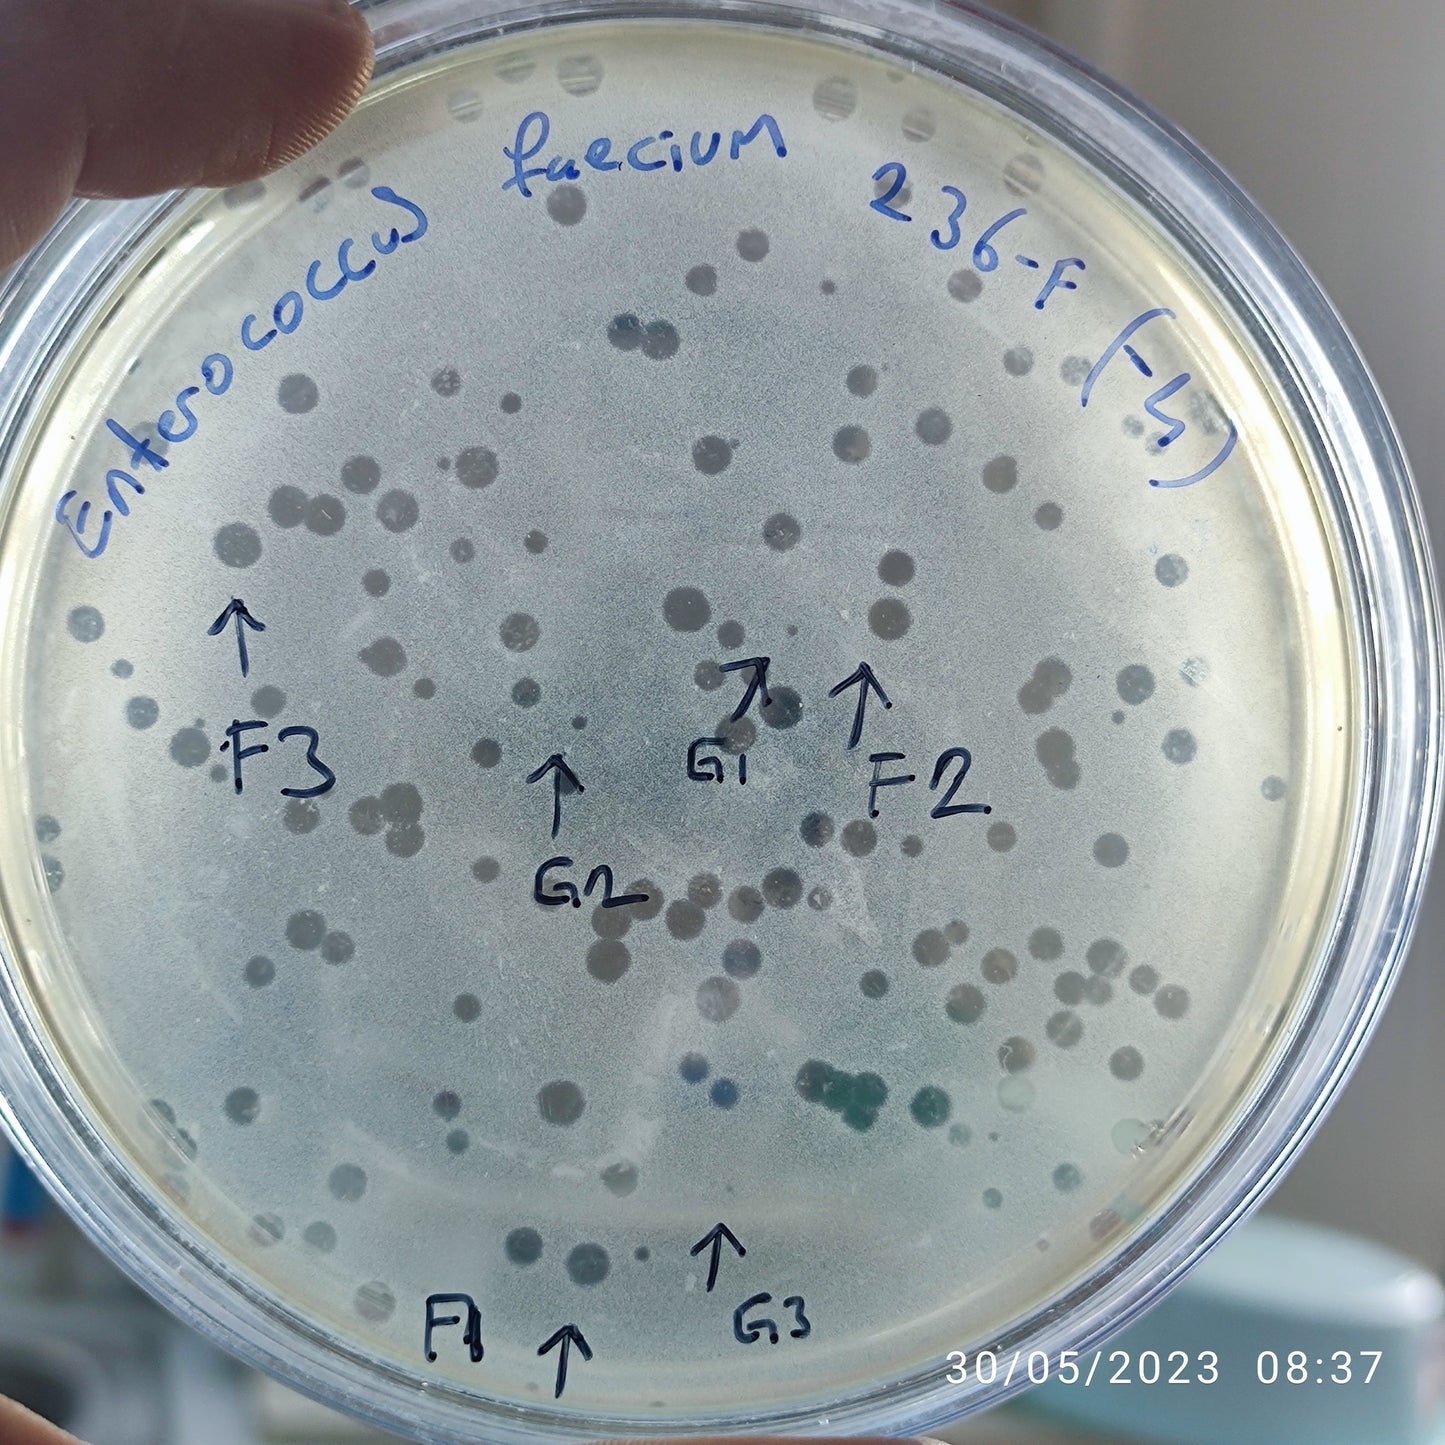 Enterococcus faecium bacteriophage 110236F